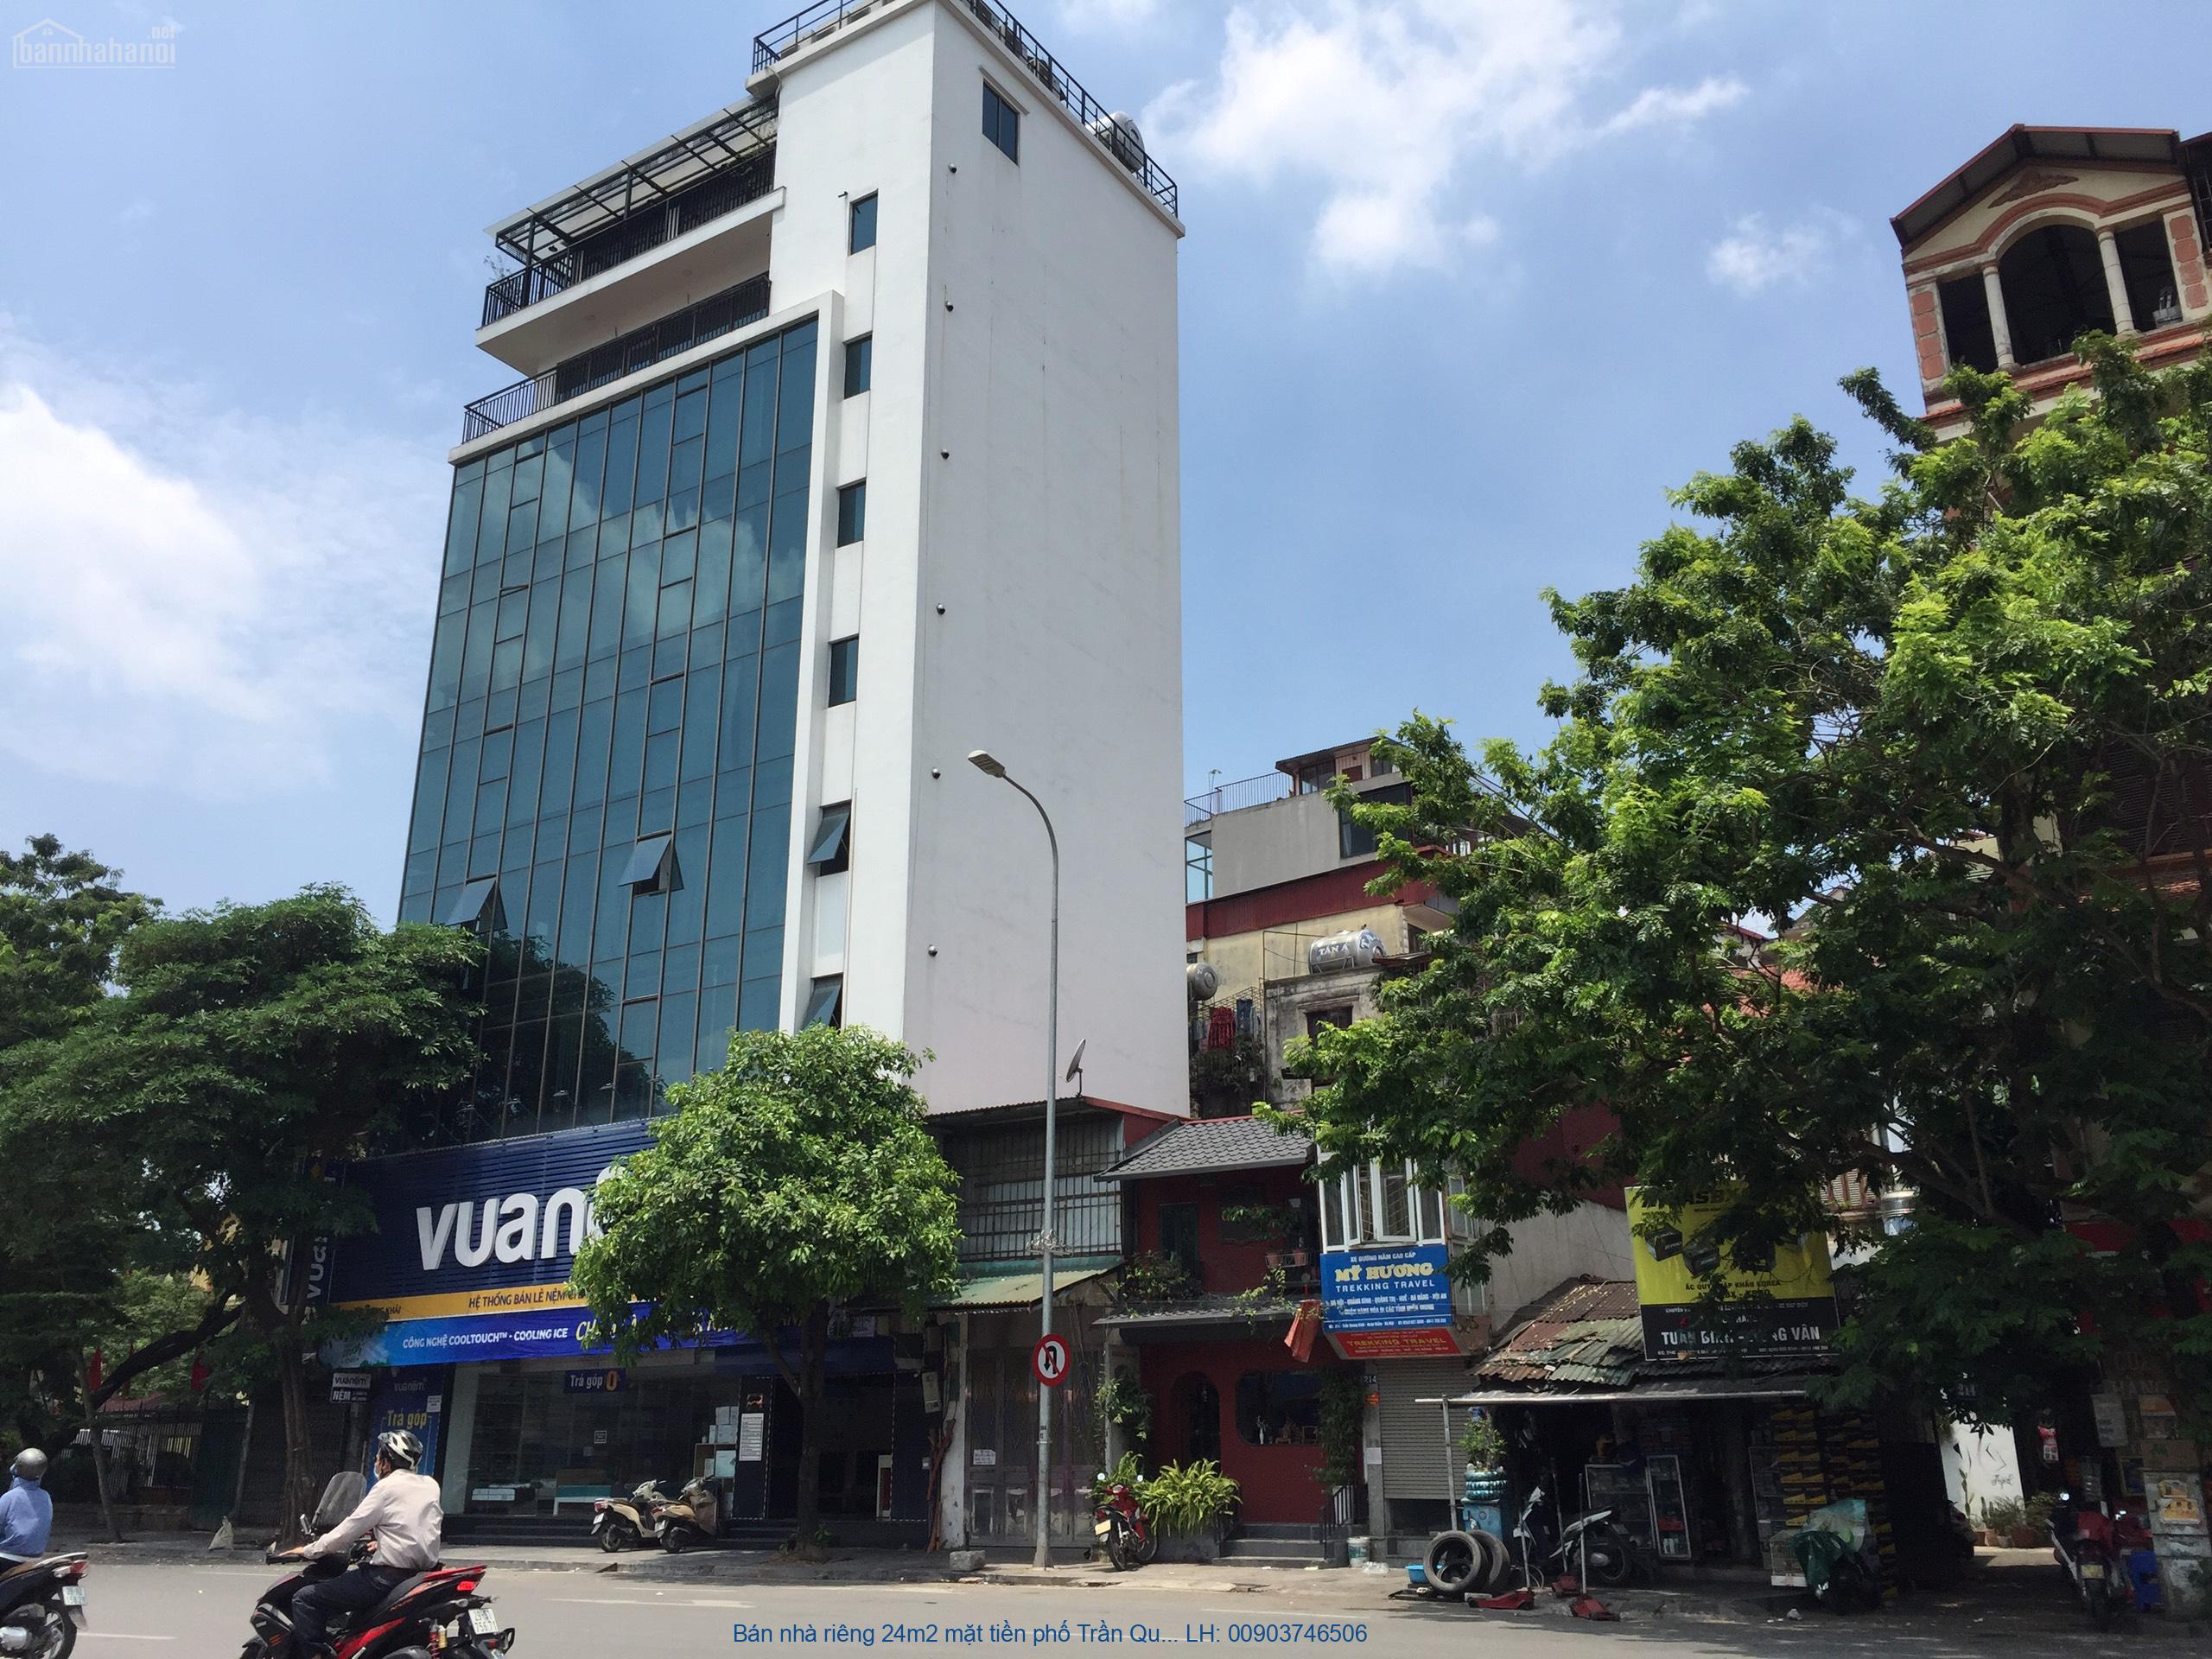 Bán nhà riêng 24m2 mặt tiền phố Trần Quang Khải Hà Nội